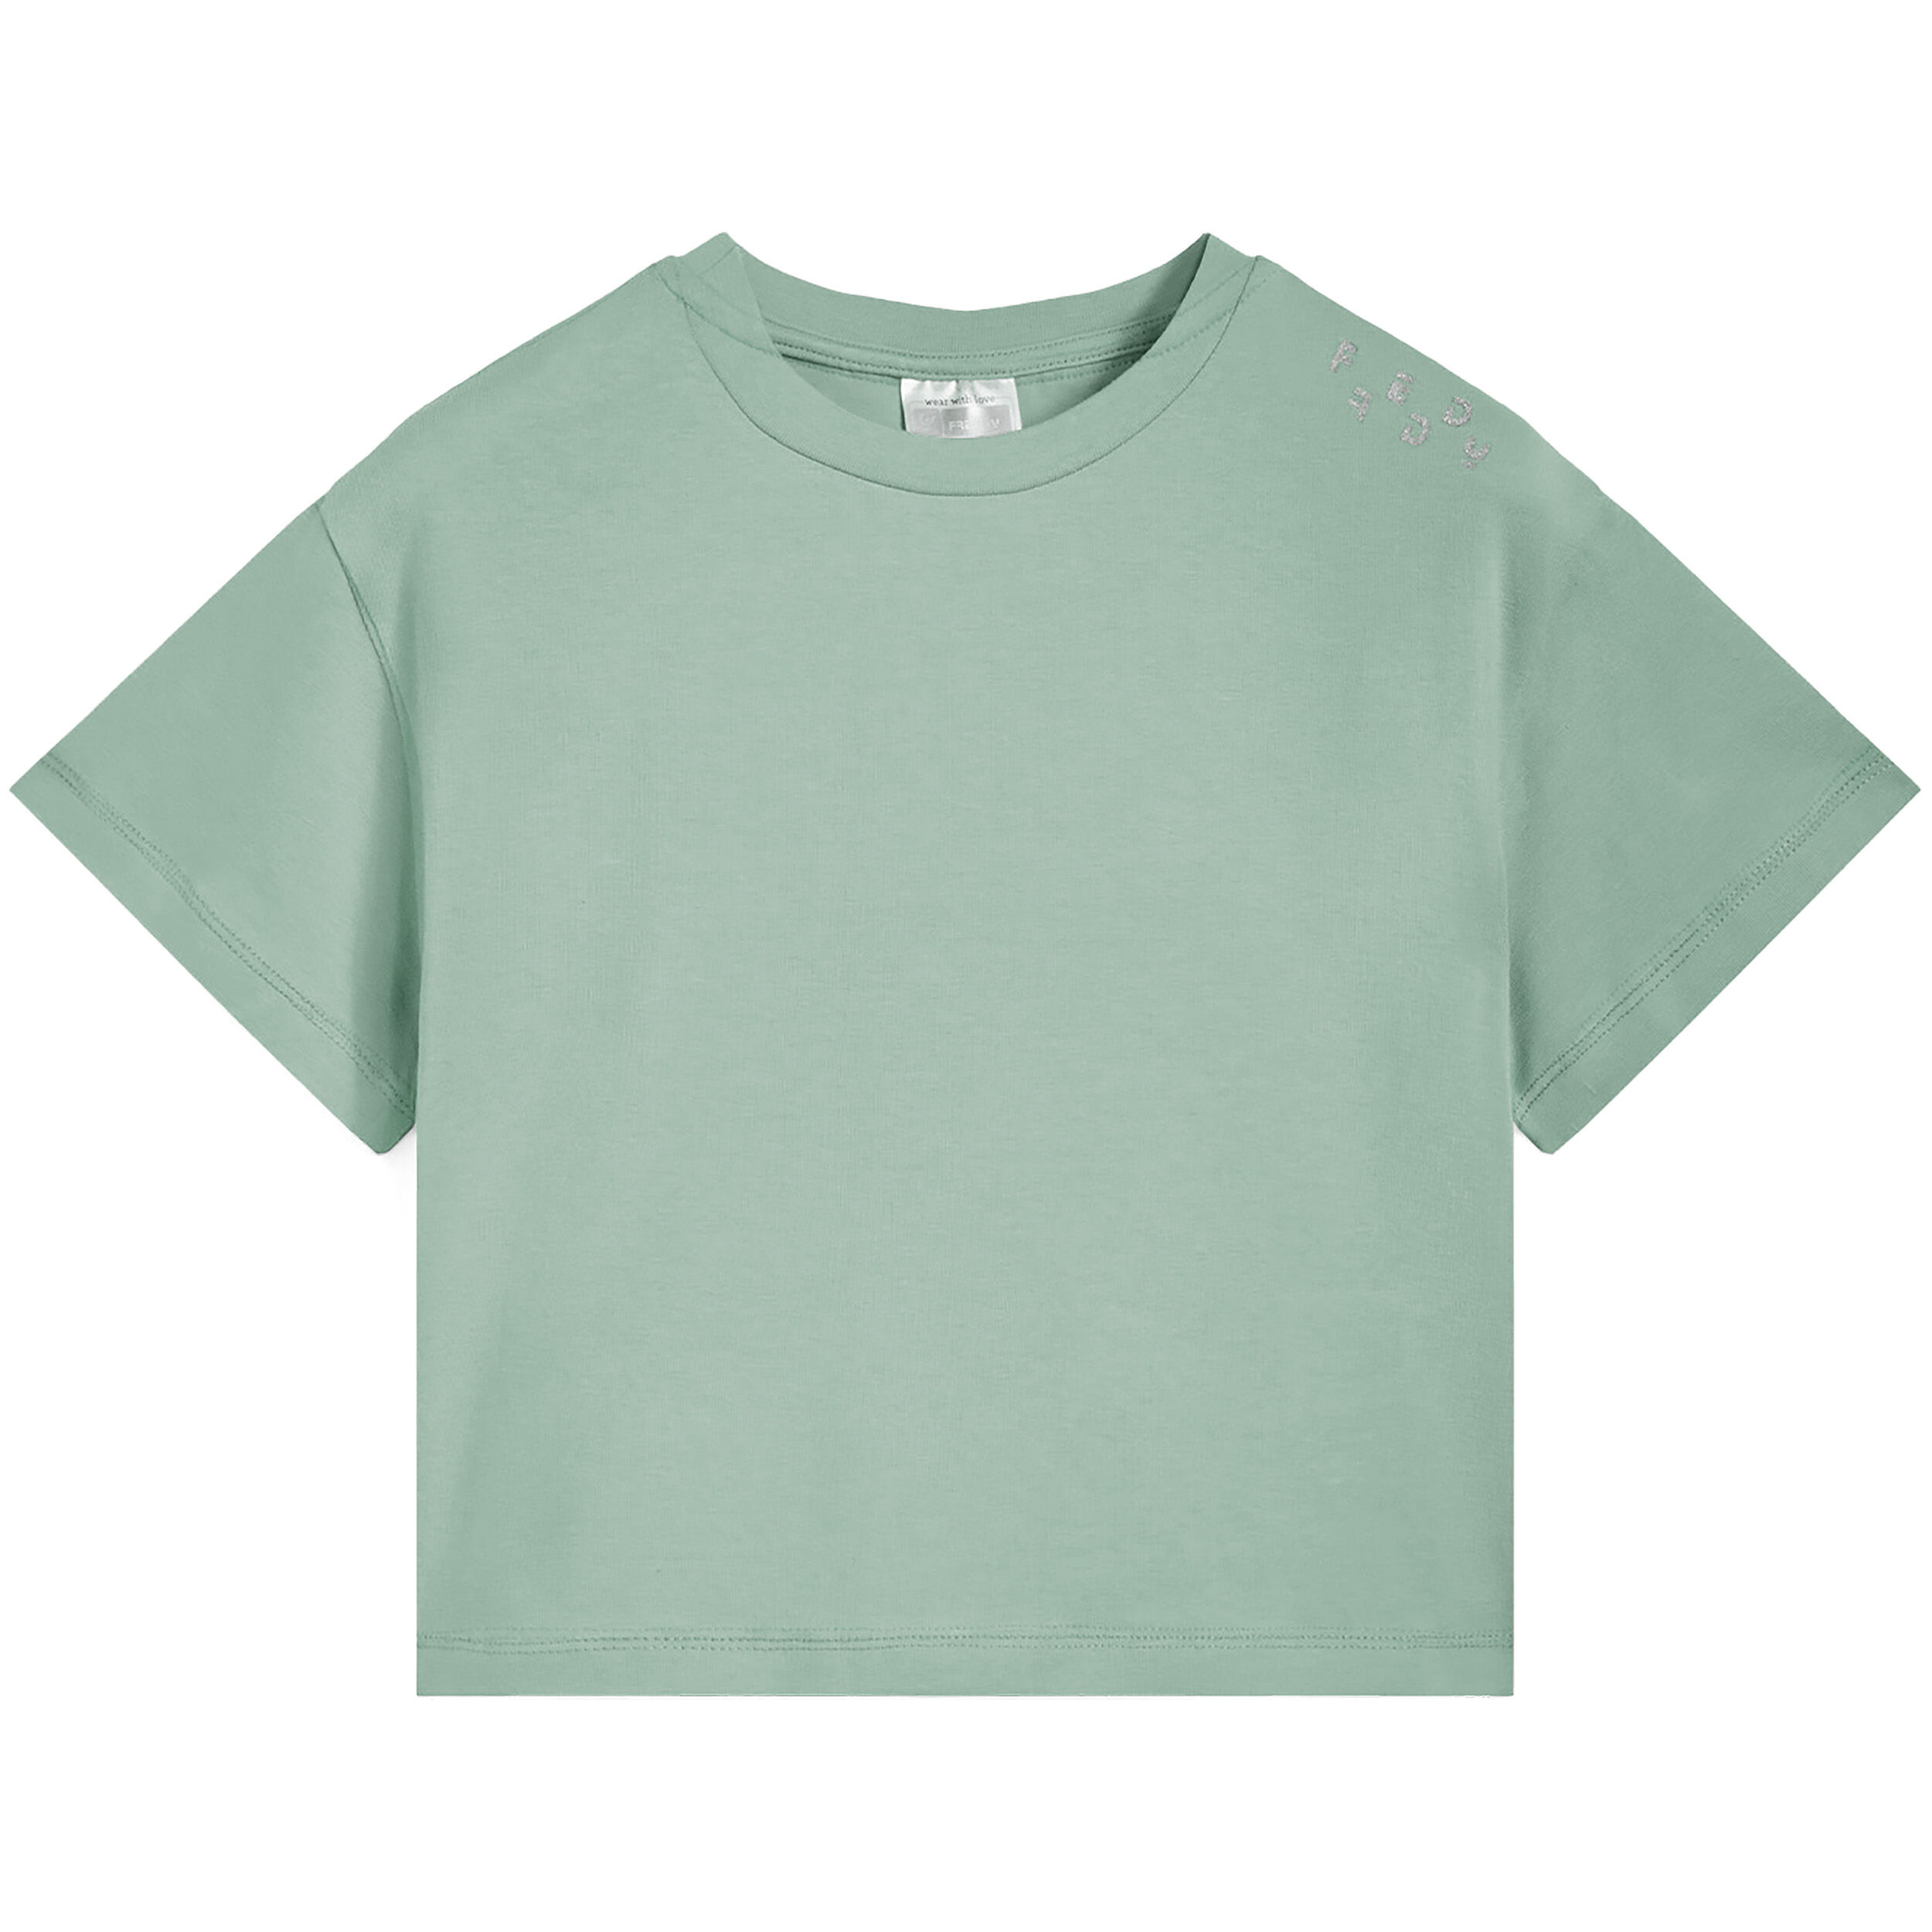 Freddy T-shirt corta da bambina con logo glitter sulla spalla Verde Militare Junior 4 Anni